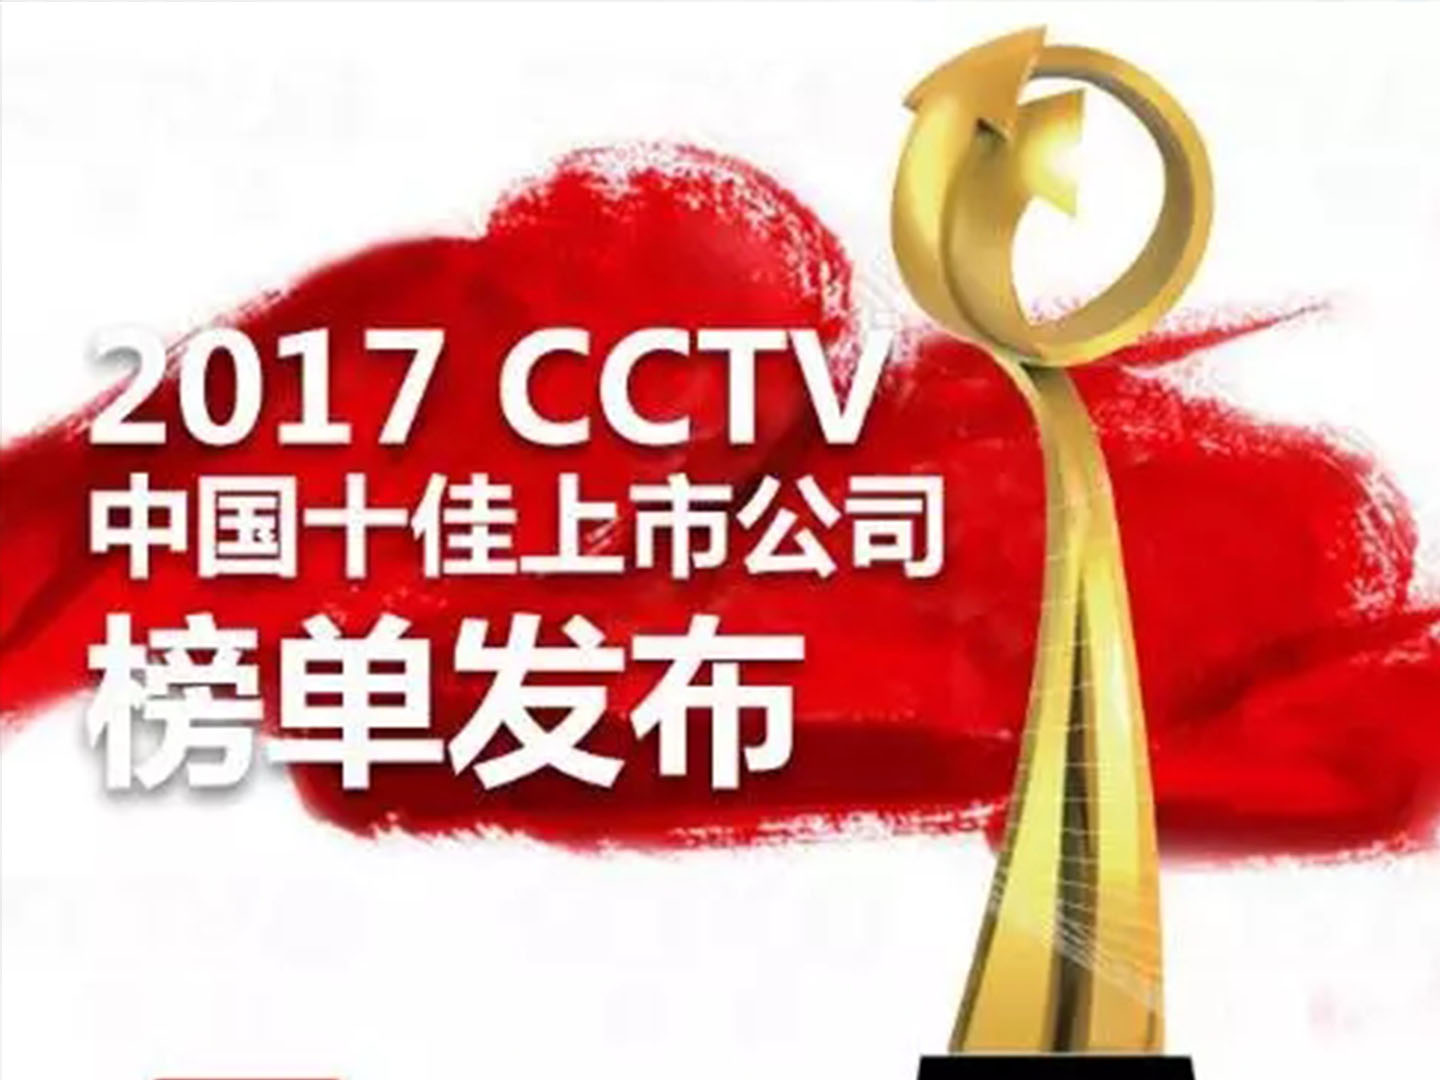 【特大喜讯】大族激光上榜“2017CCTV中国十佳上市公司”